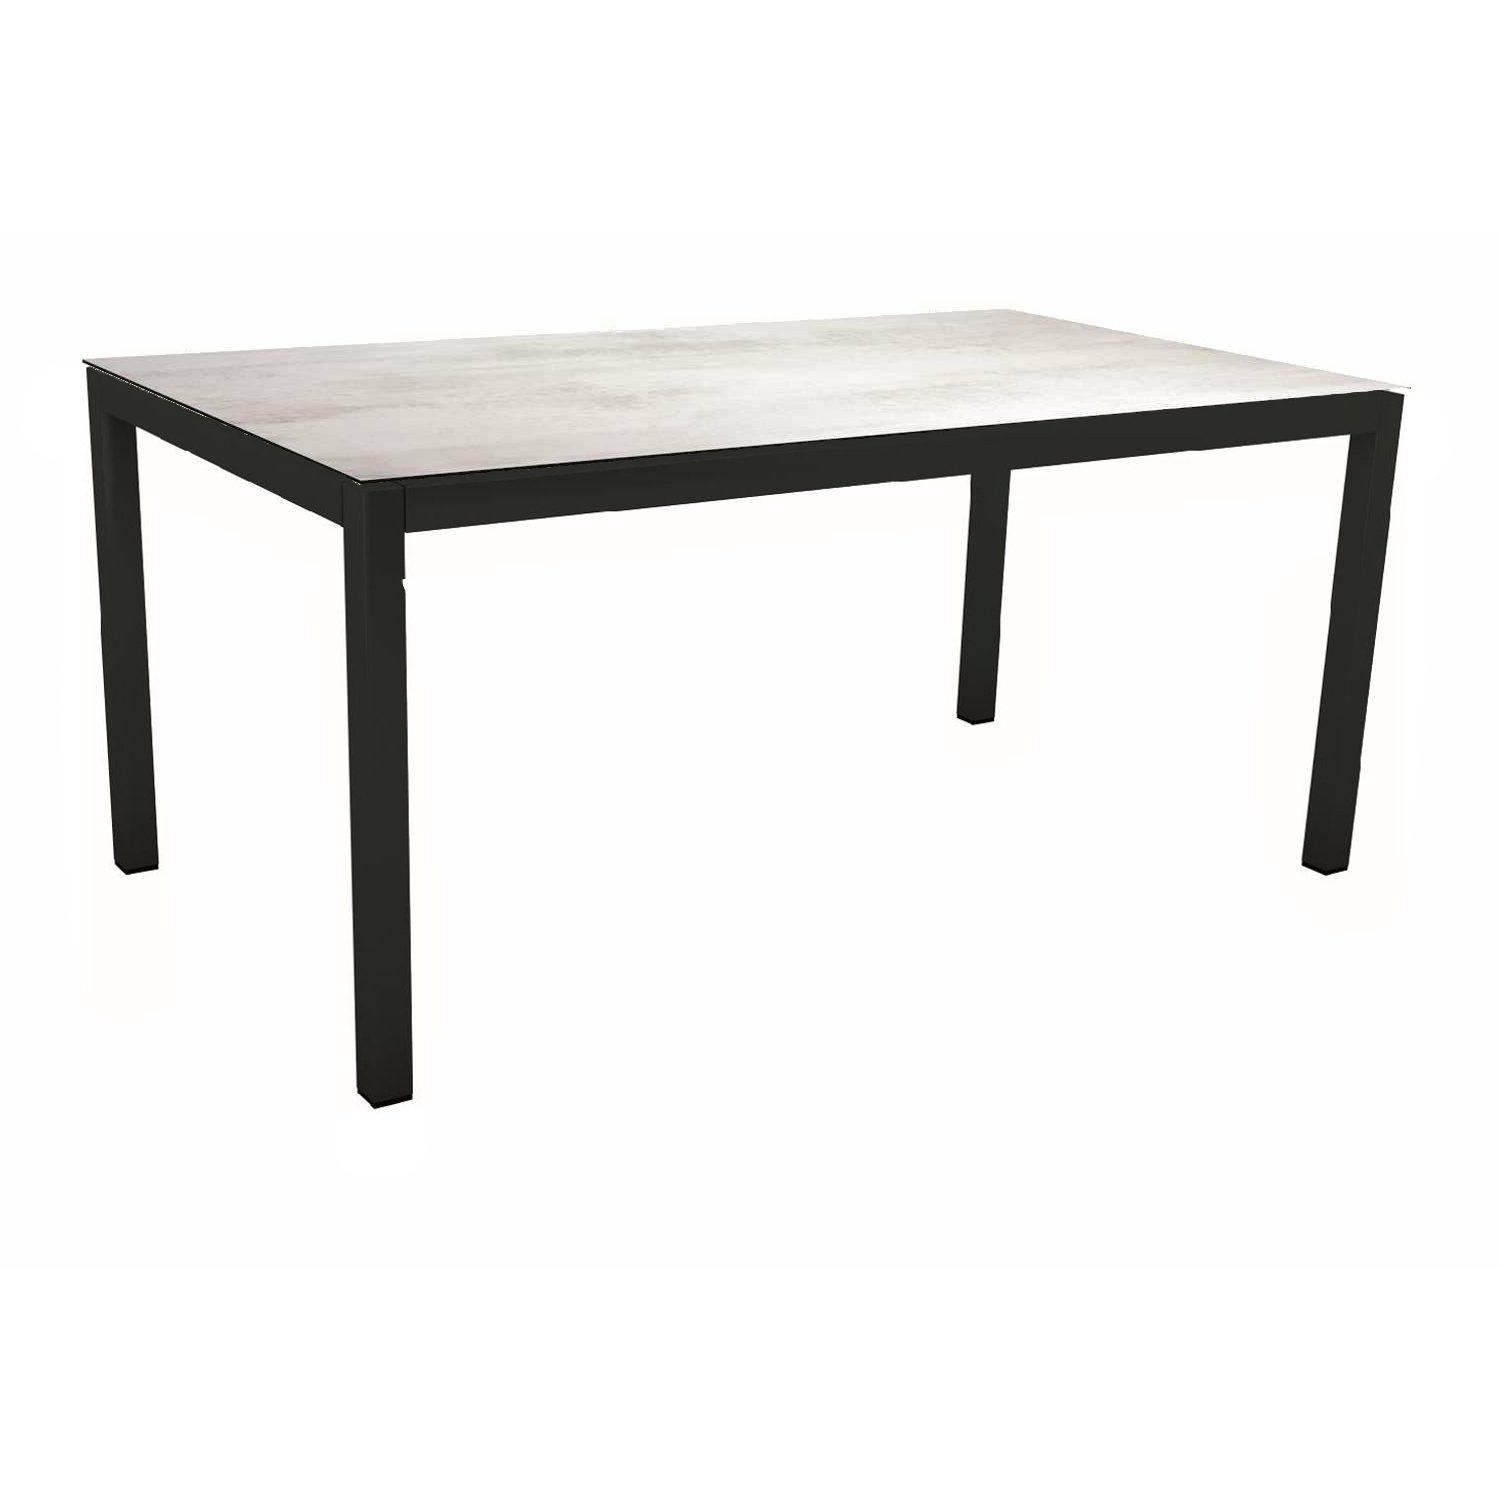 Stern Gartentisch, Gestell Aluminium schwarz matt, Tischplatte HPL Zement hell, 160x90 cm